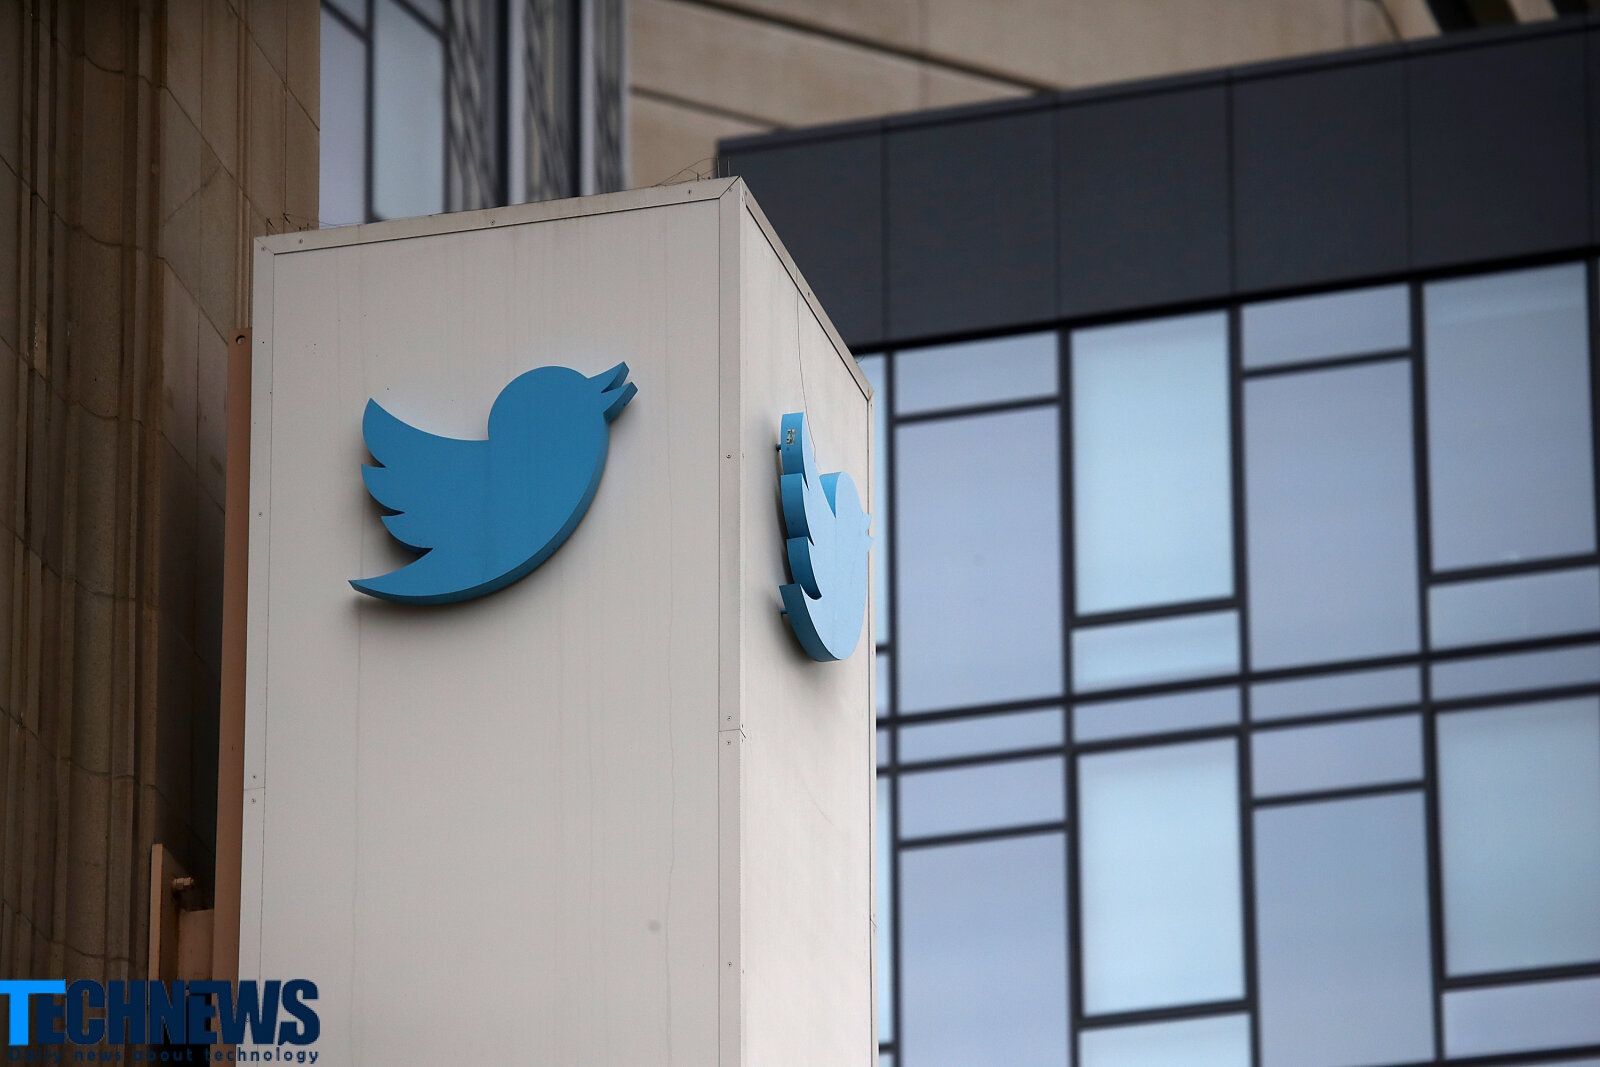 دو کارمند سابق توئیتر به فروش اطلاعات کاربران به مقامات سعودی متهم شدند